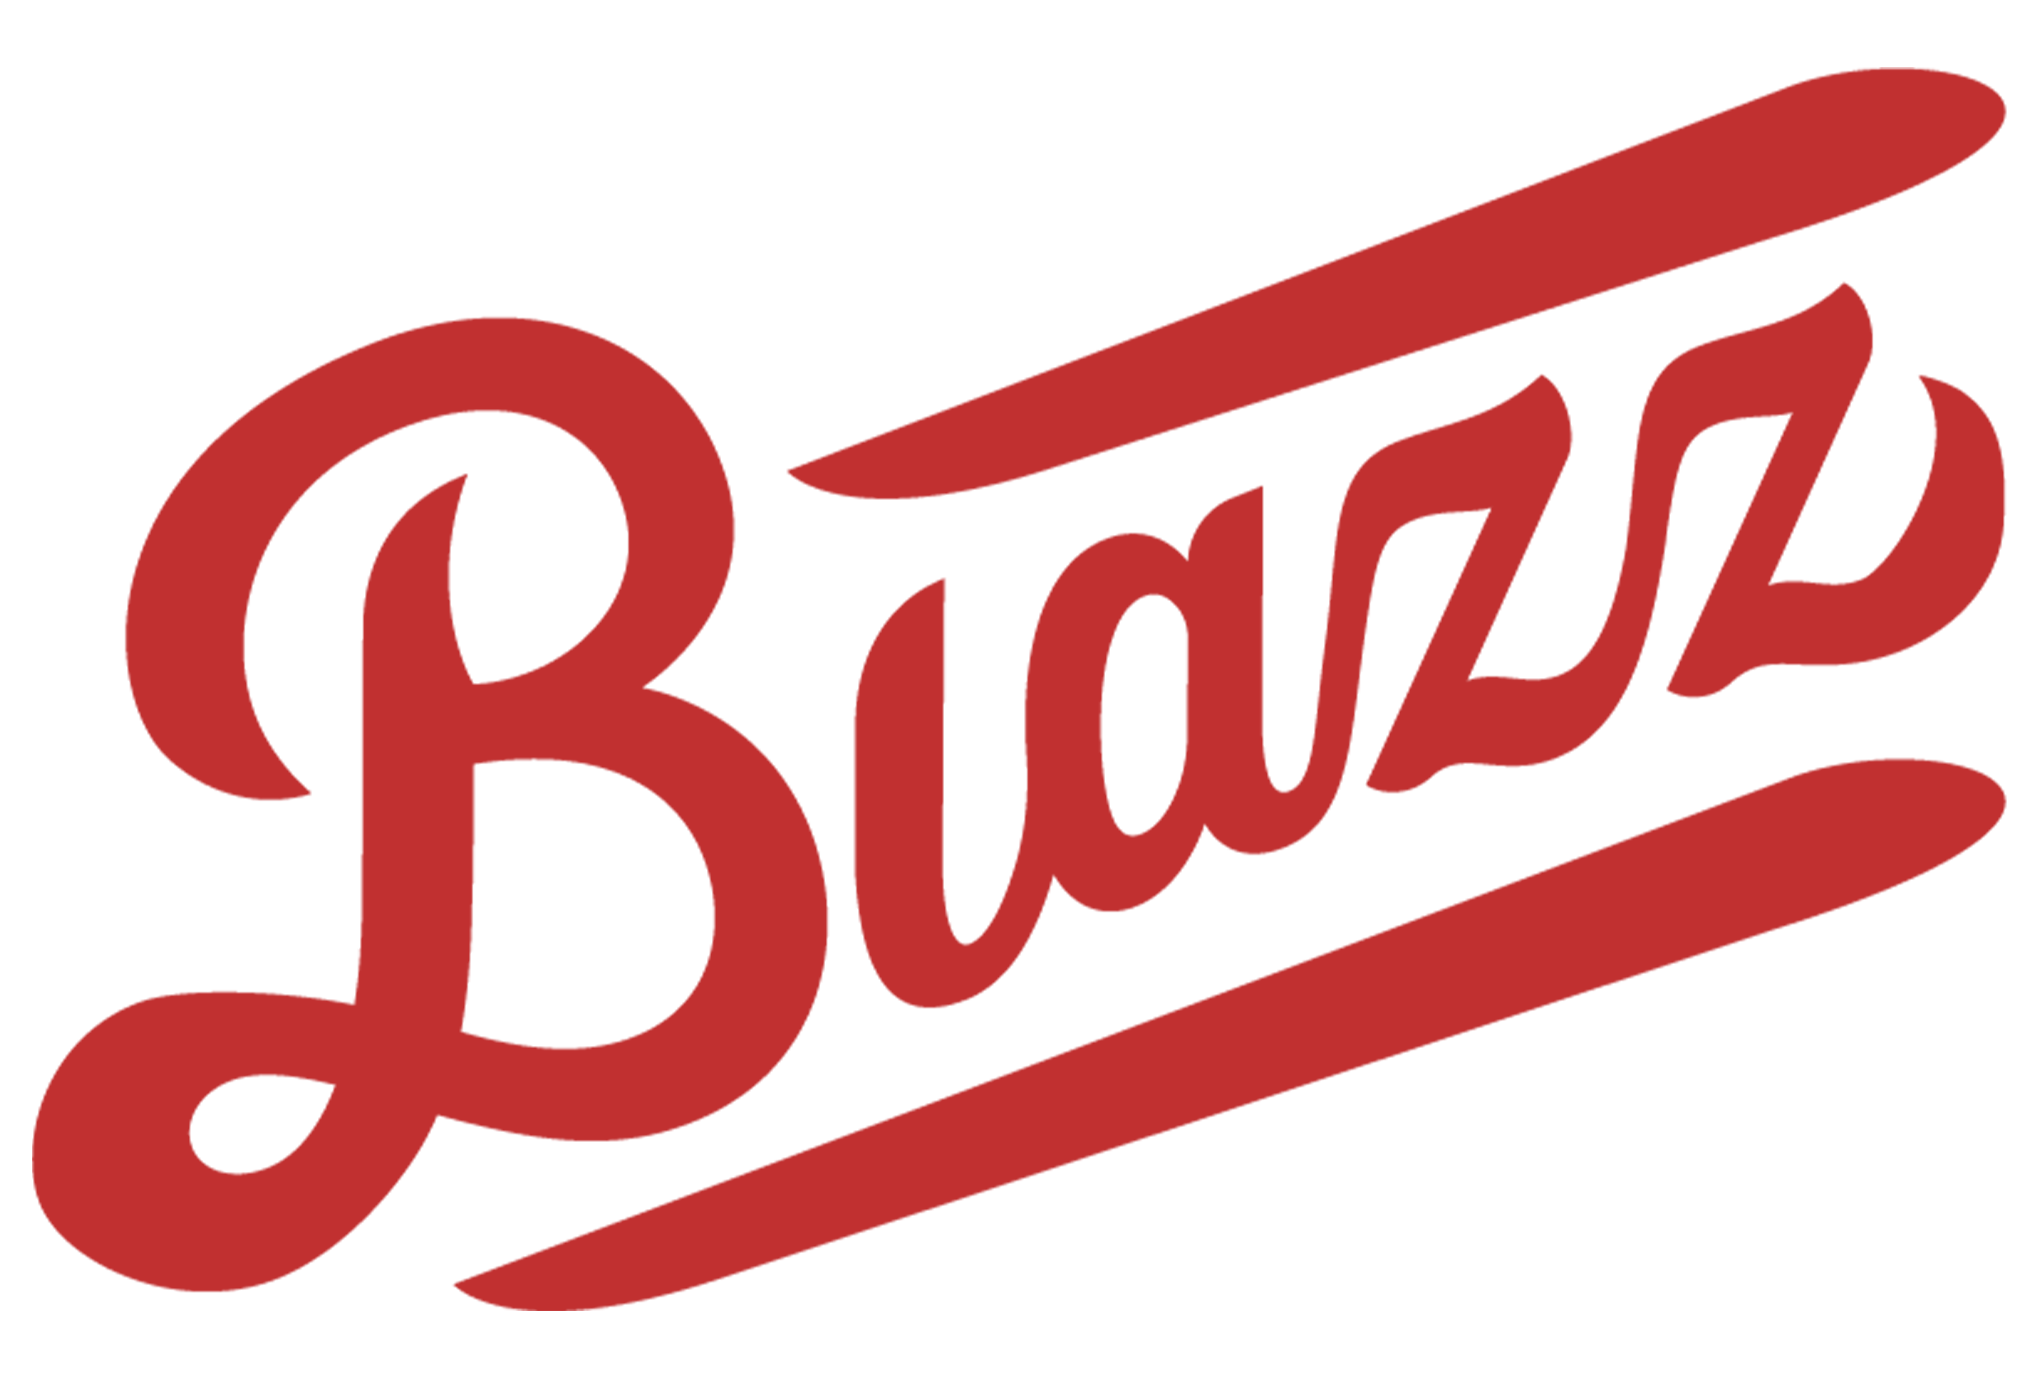 blazz works